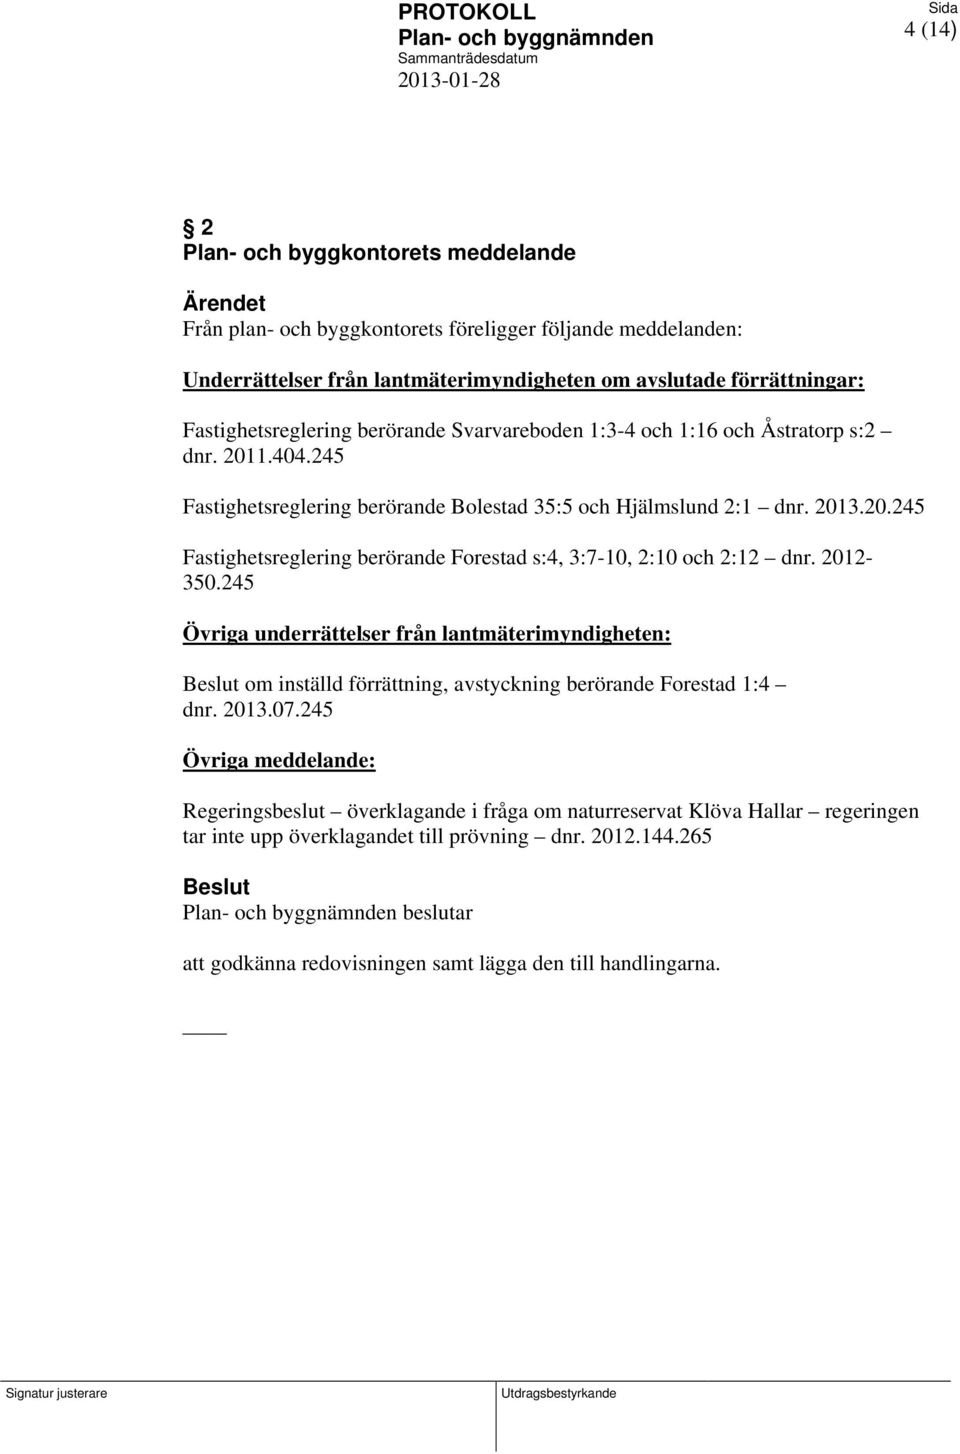 2012-350.245 Övriga underrättelser från lantmäterimyndigheten: om inställd förrättning, avstyckning berörande Forestad 1:4 dnr. 2013.07.